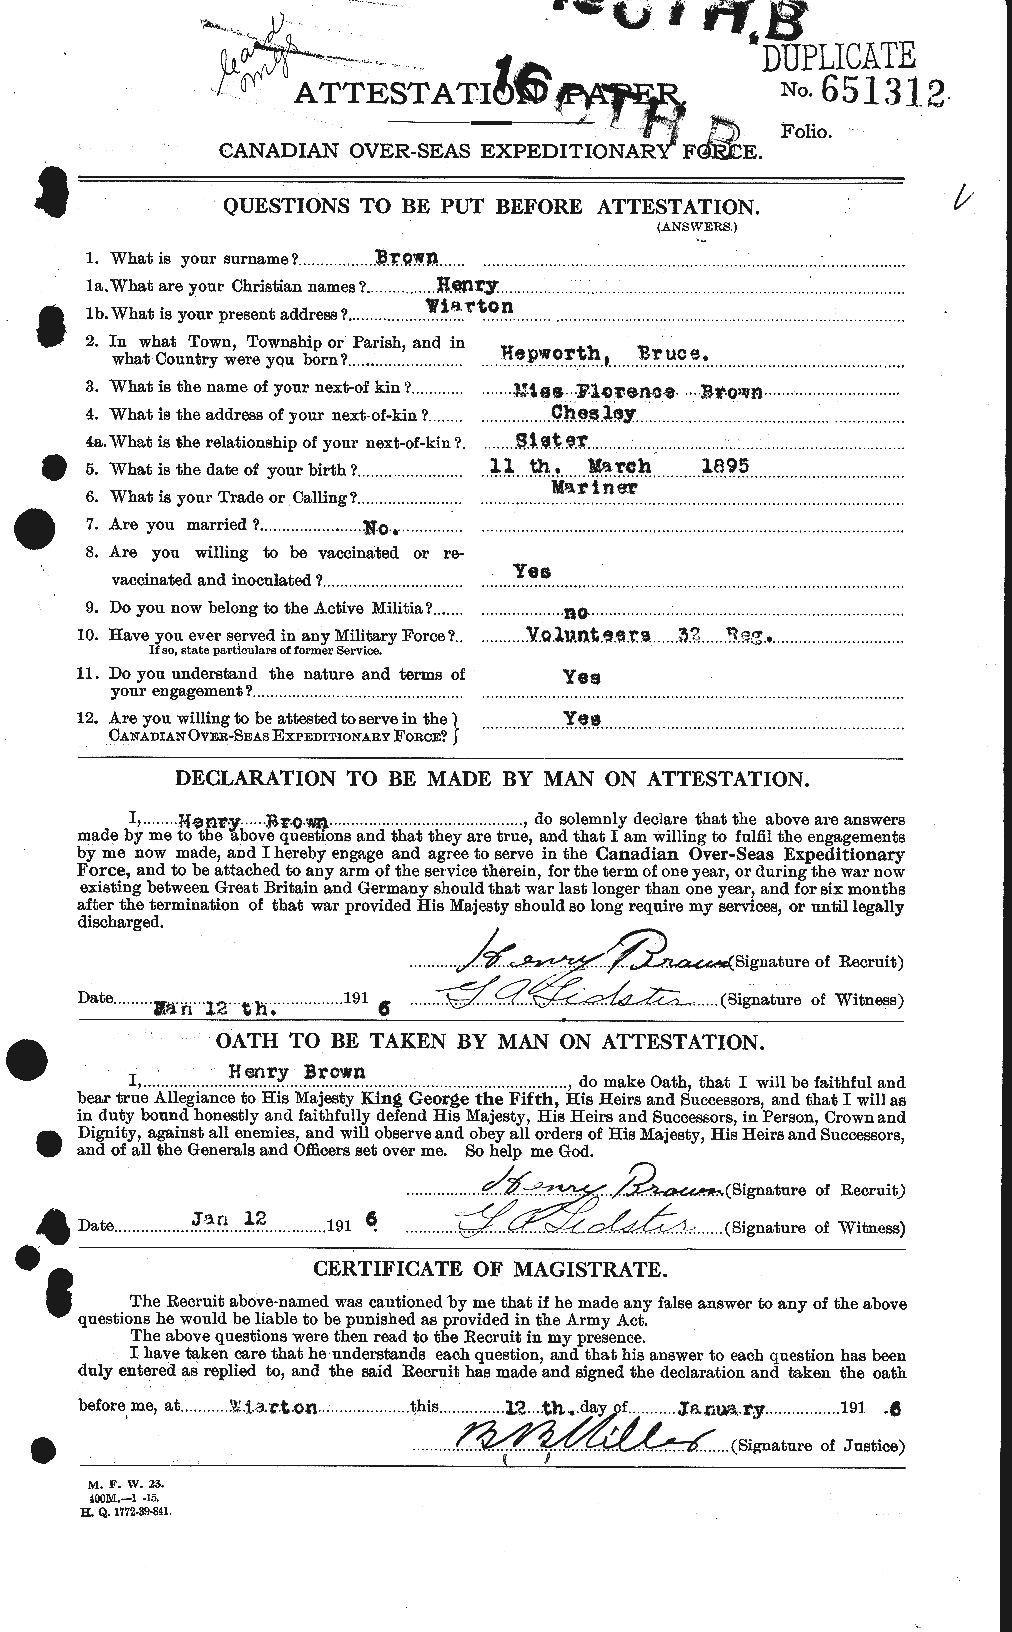 Dossiers du Personnel de la Première Guerre mondiale - CEC 265508a